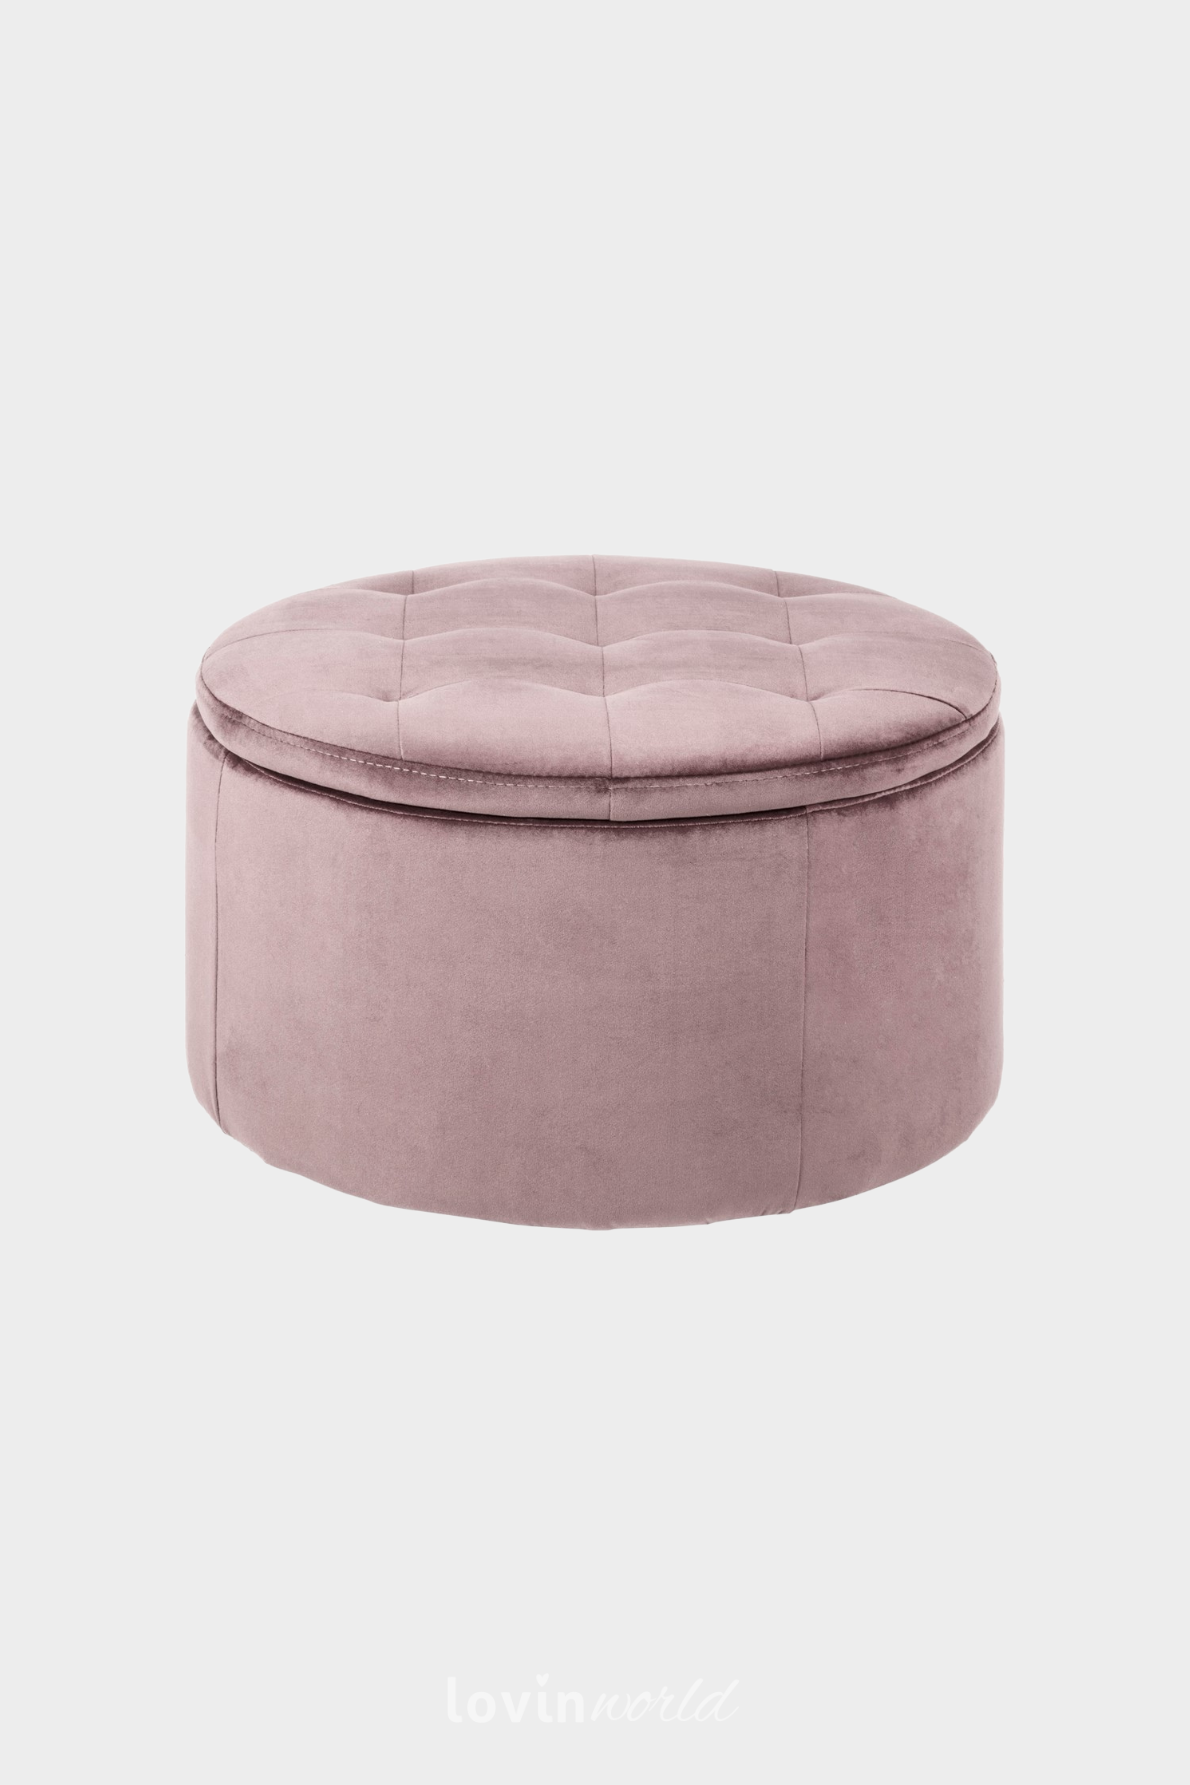 Pouf contenitore Worry, in colore rosa 35x60 cm.